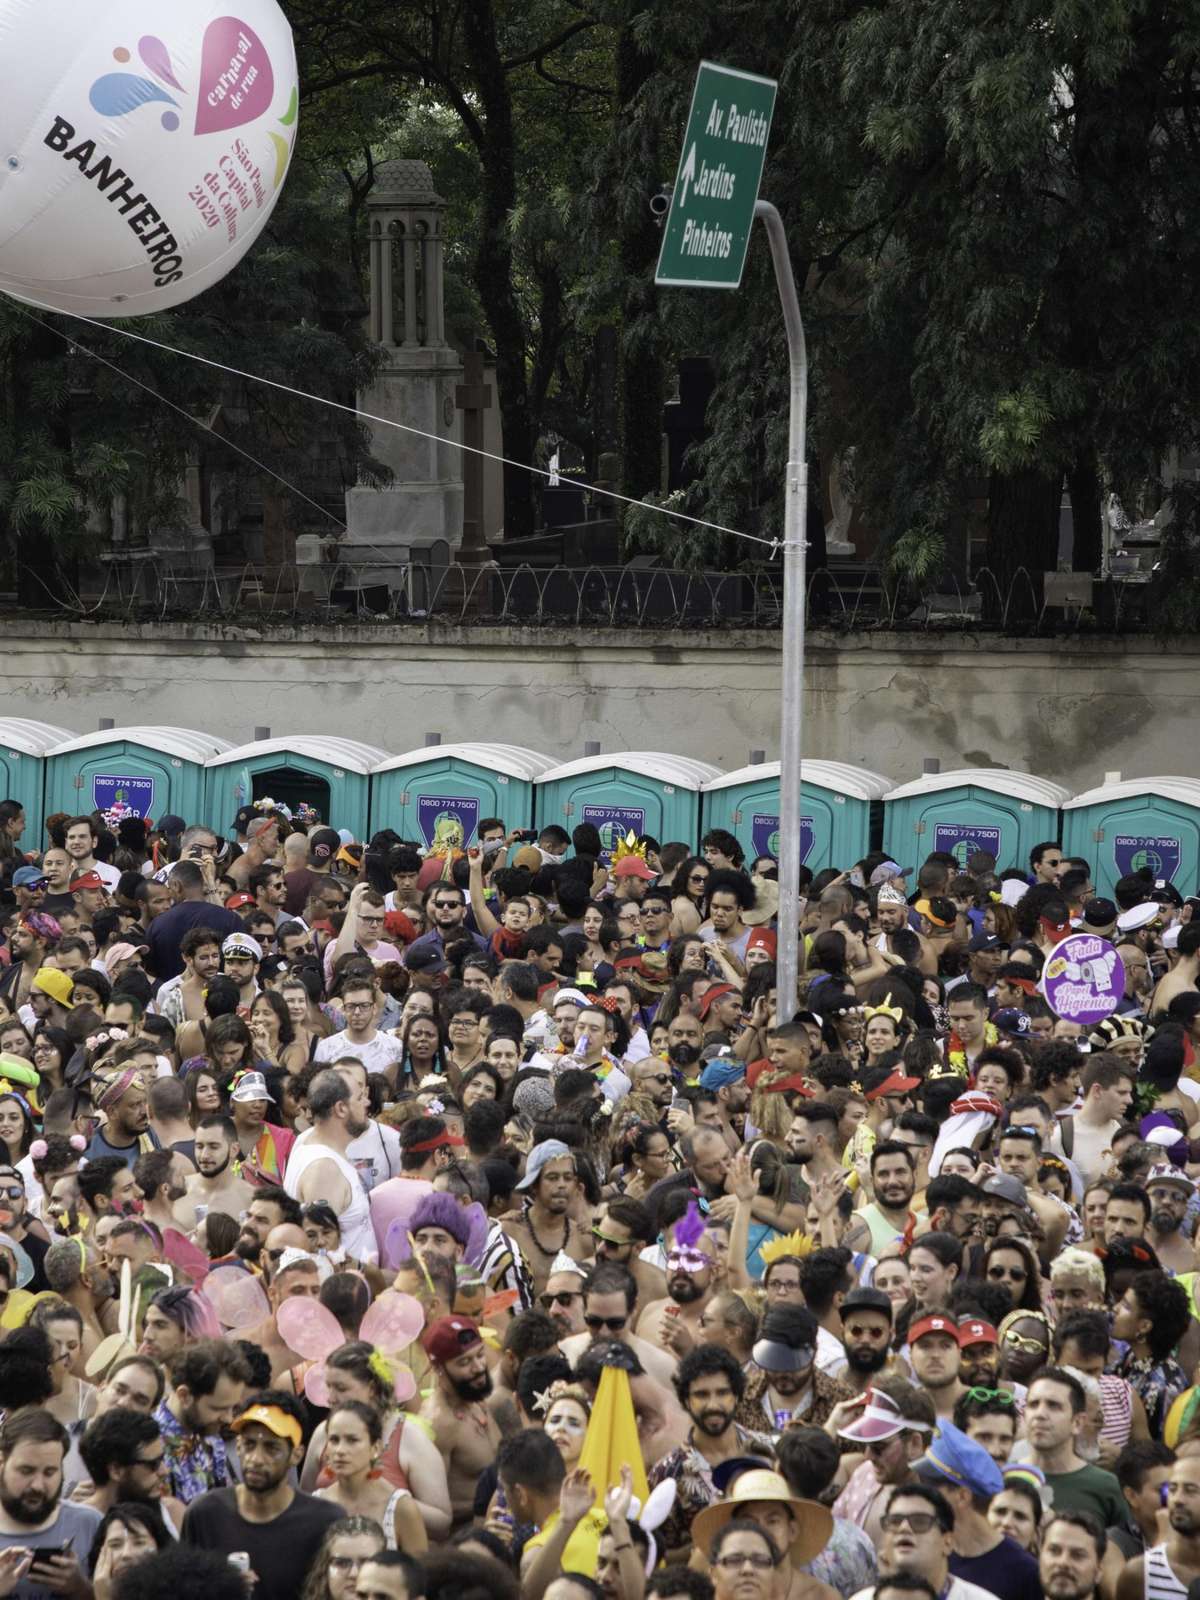 Blocos lançam manifesto pela realização do Carnaval de rua no Rio